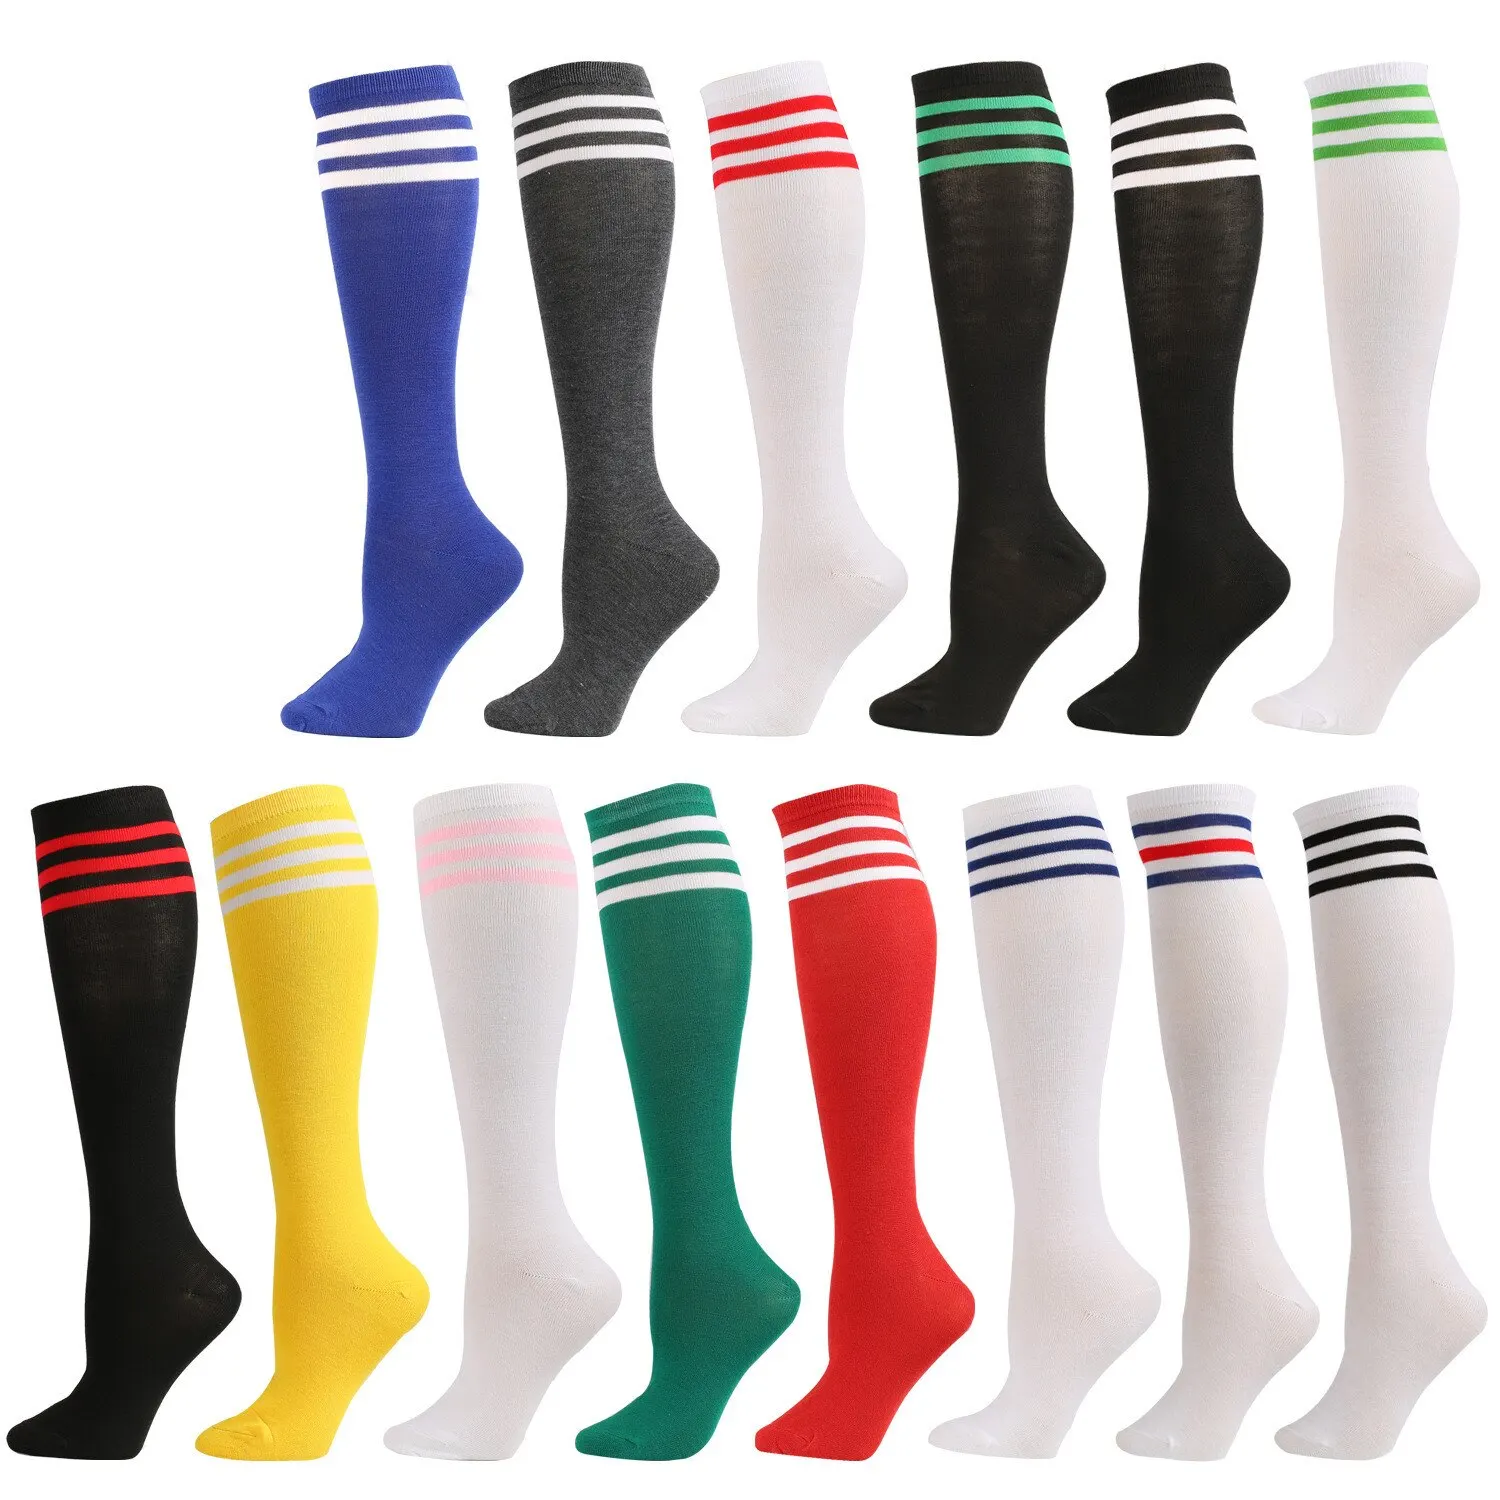 

2 Non Pairs Slip Socks Football Long Tube Knee High Stockings Socks Striped Soccer Socks Running Sports Socks